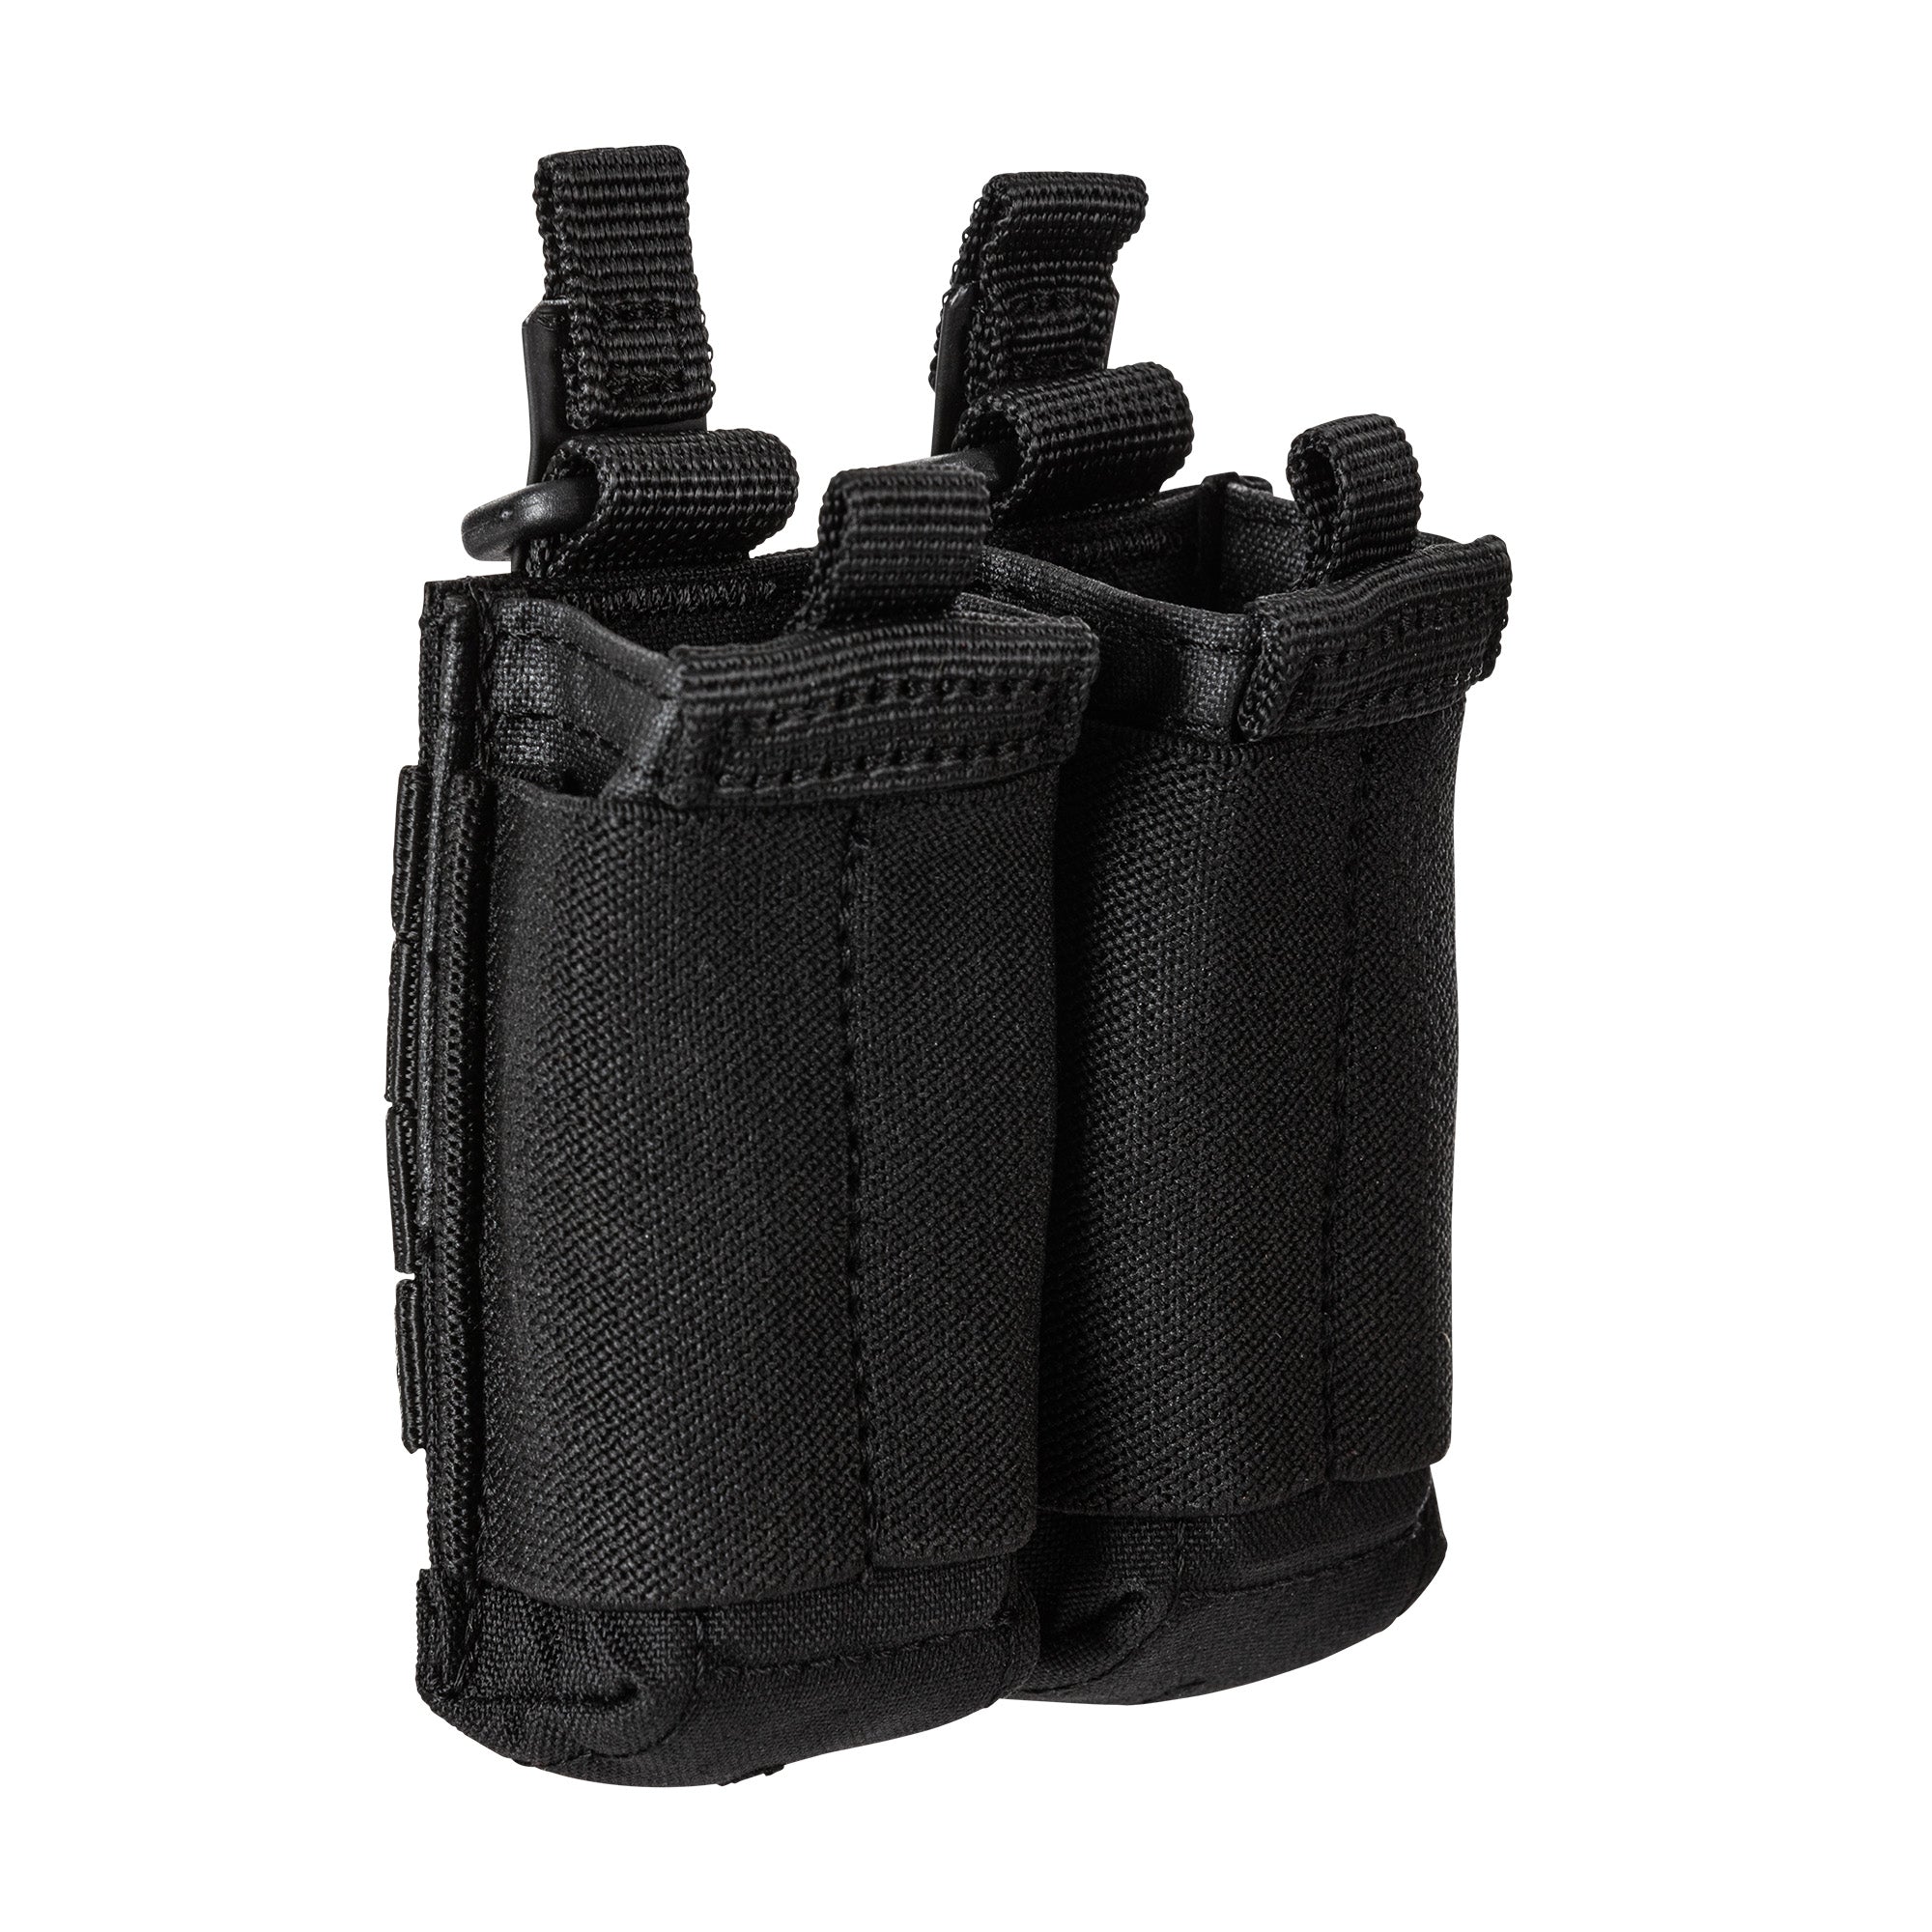 5.11 Tactical Flex Double Pistol Mag Pouch 2.0 Accessories 5.11 Tactical Black Tactical Gear Supplier Tactical Distributors Australia